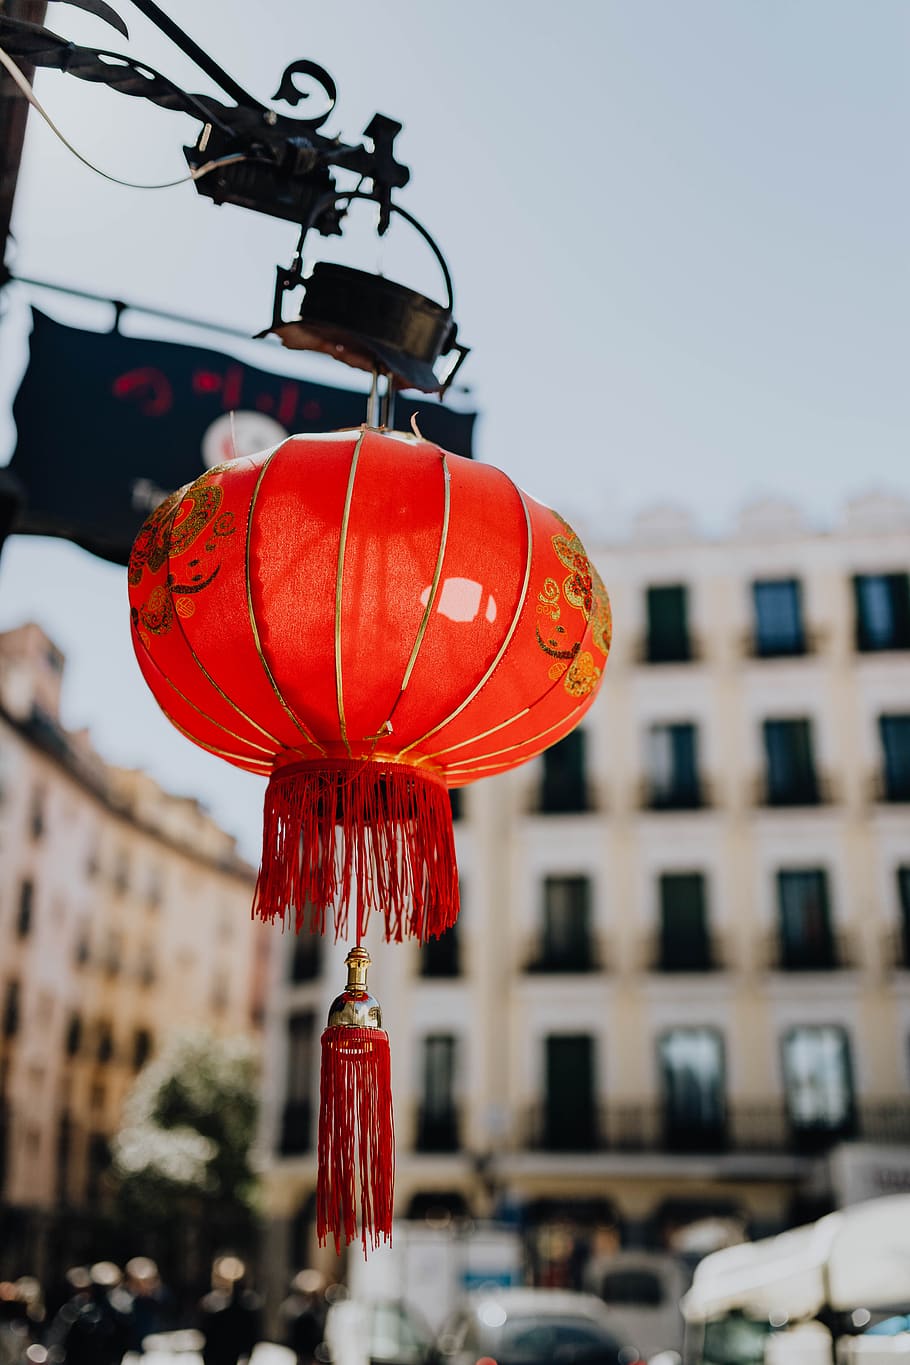 Cina, lampu, asia, lentera, tradisional, Merah, Madrid, Spanyol, eksterior bangunan, gantung